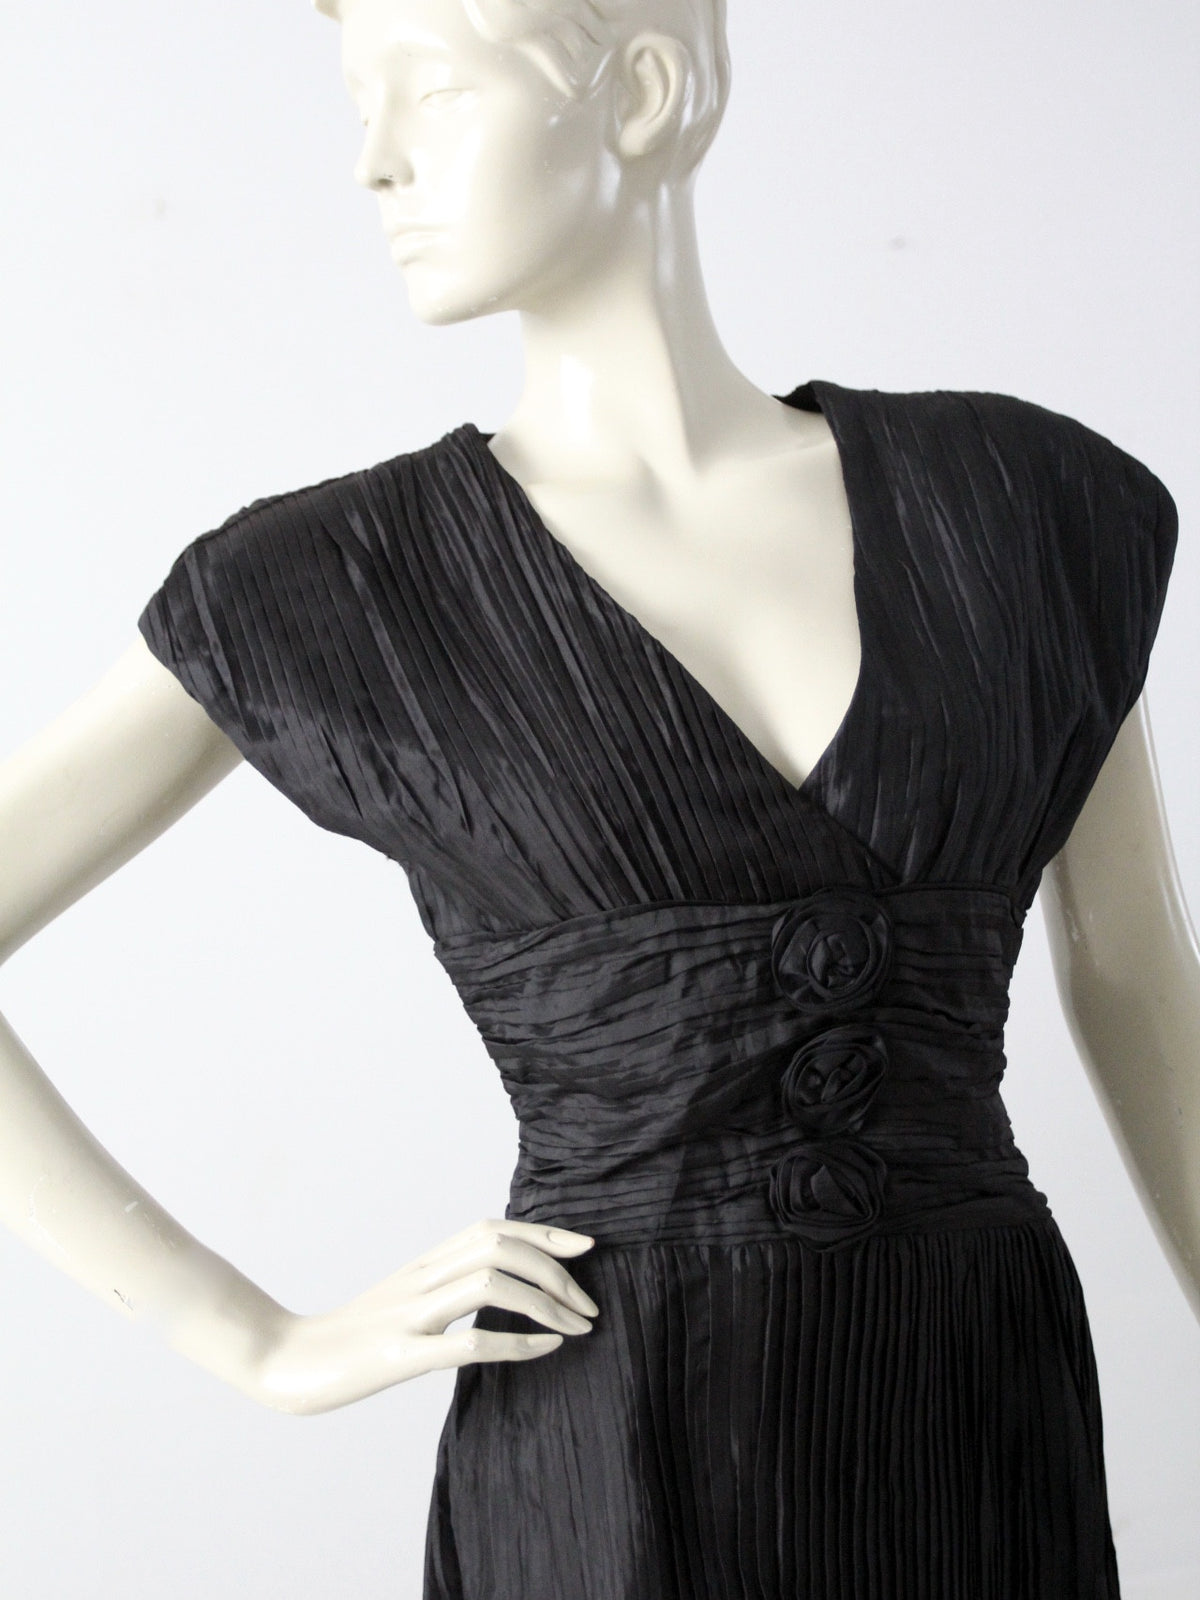 vintage 70s black cocktail dress